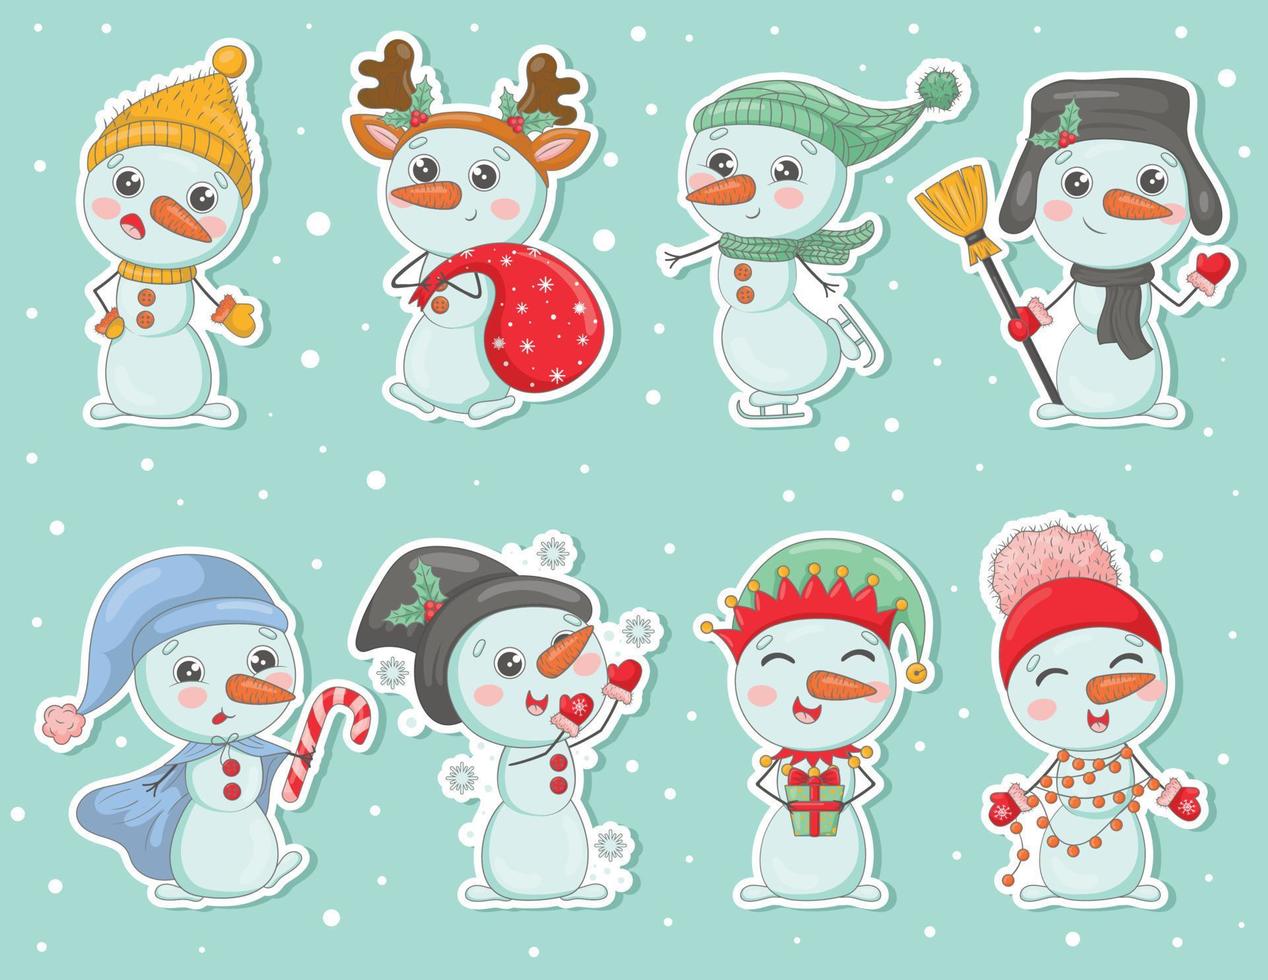 paquete de lindas pegatinas de muñecos de nieve de dibujos animados en sombreros de punto y bufandas con regalos de navidad, copos de nieve, acebo, vestidos como personajes de año nuevo vector